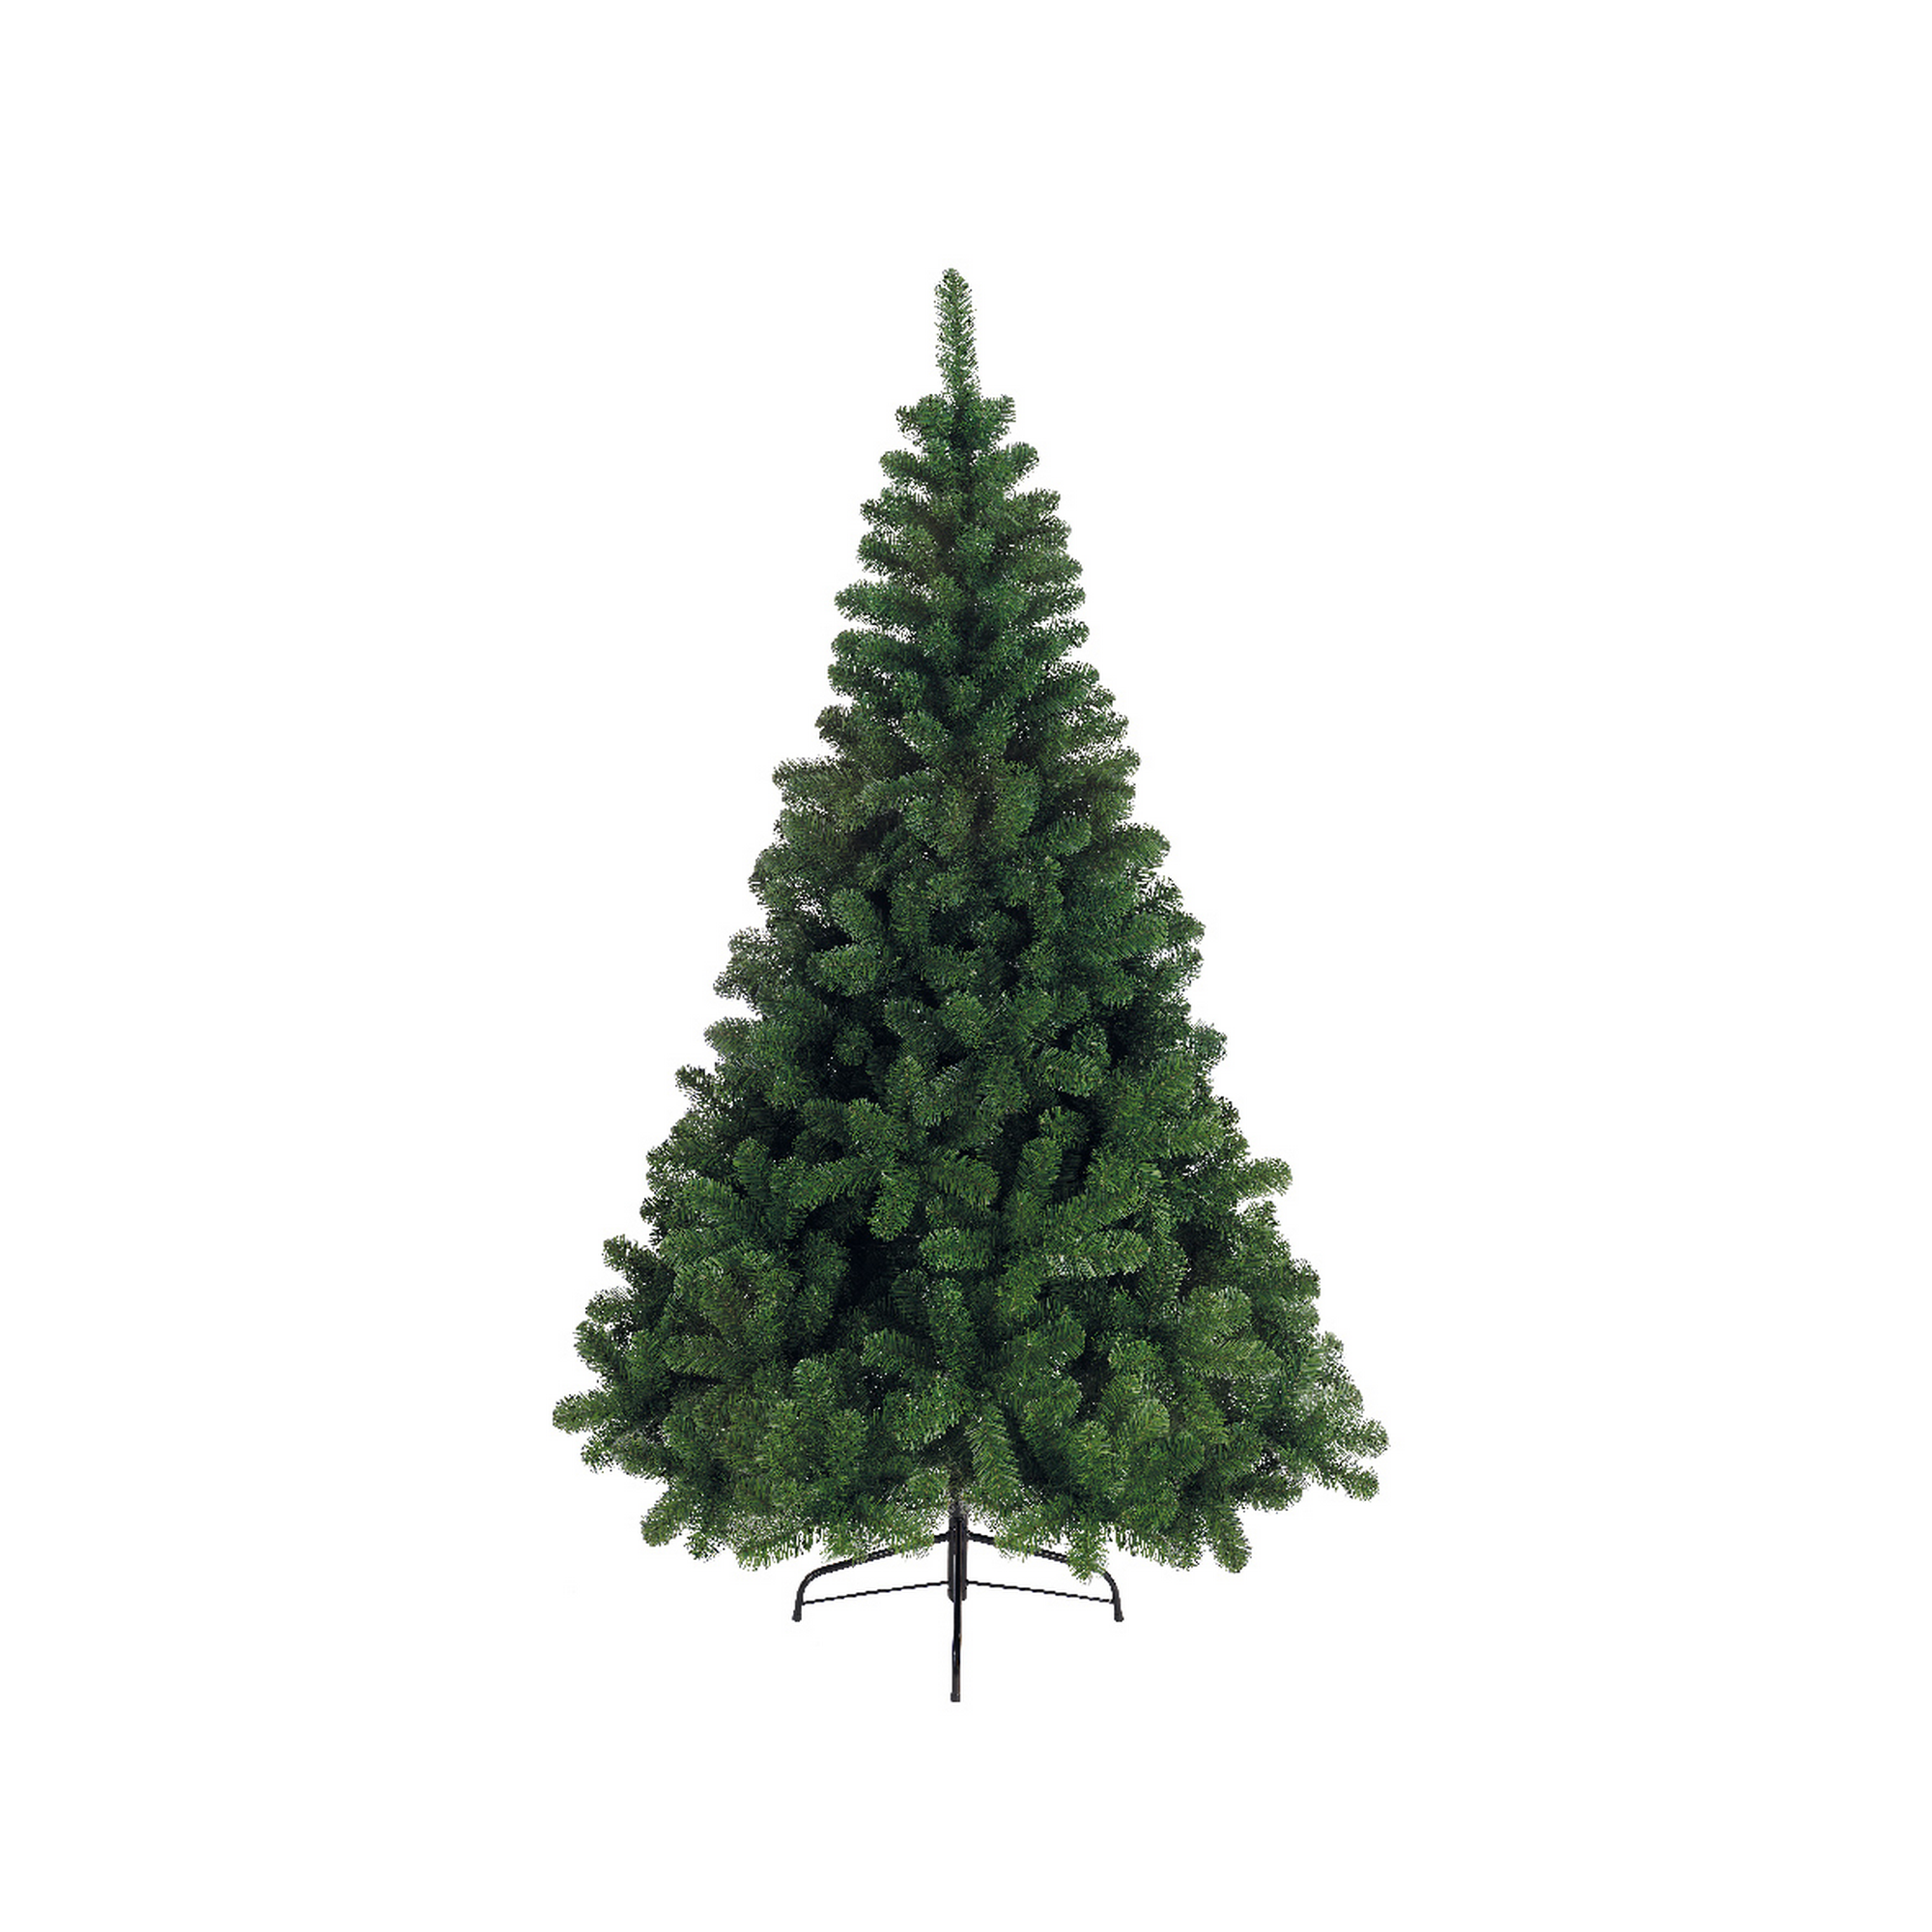 Künstlicher Weihnachtsbaum 'Imperial' grün 150 cm + product picture